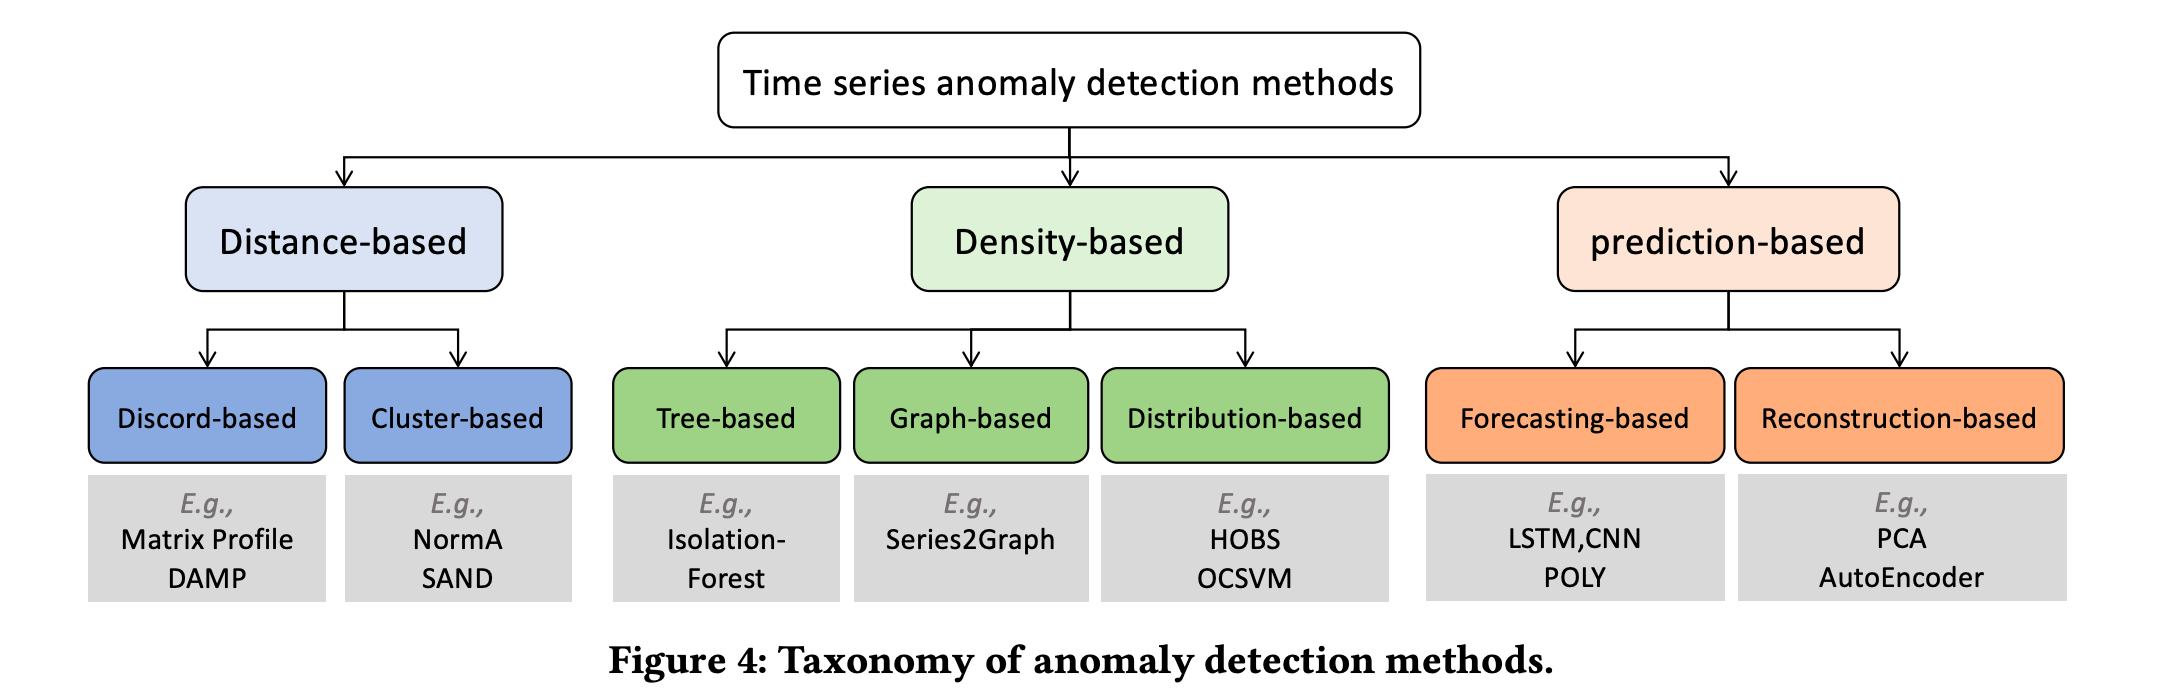 Anomaly Detection Method